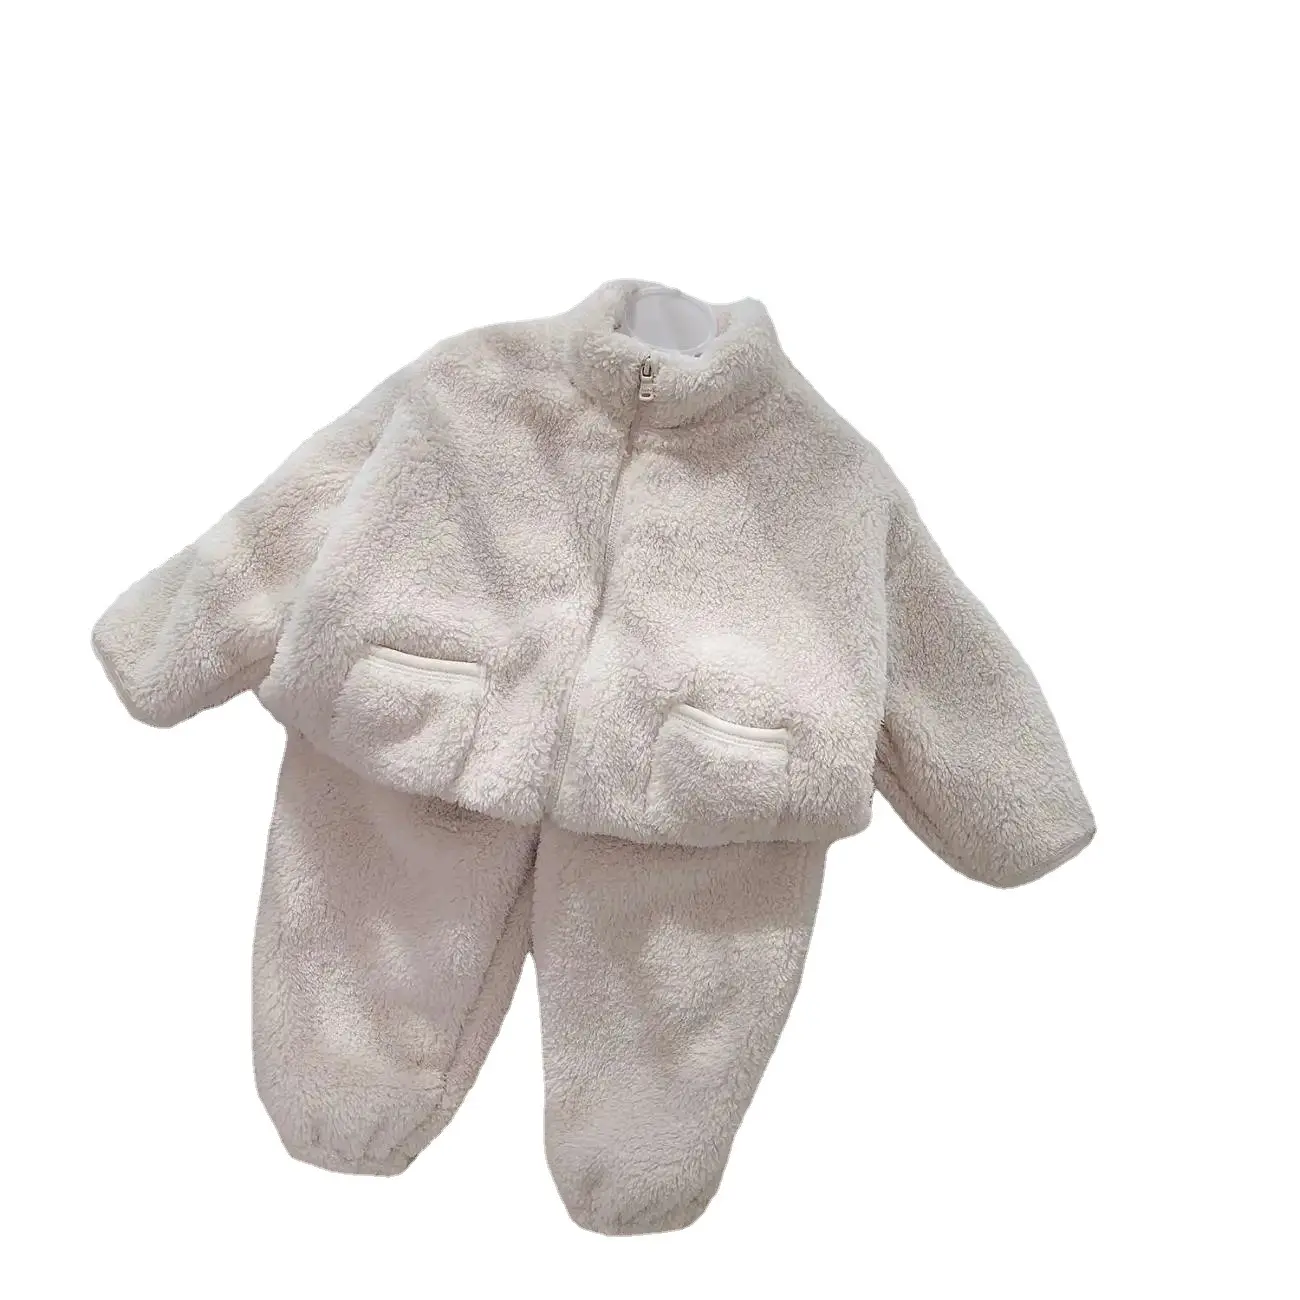 Vendita calda Comfort Soft coral fleece spessa home wear neonati maschi ragazze vestito set di abbigliamento unisex